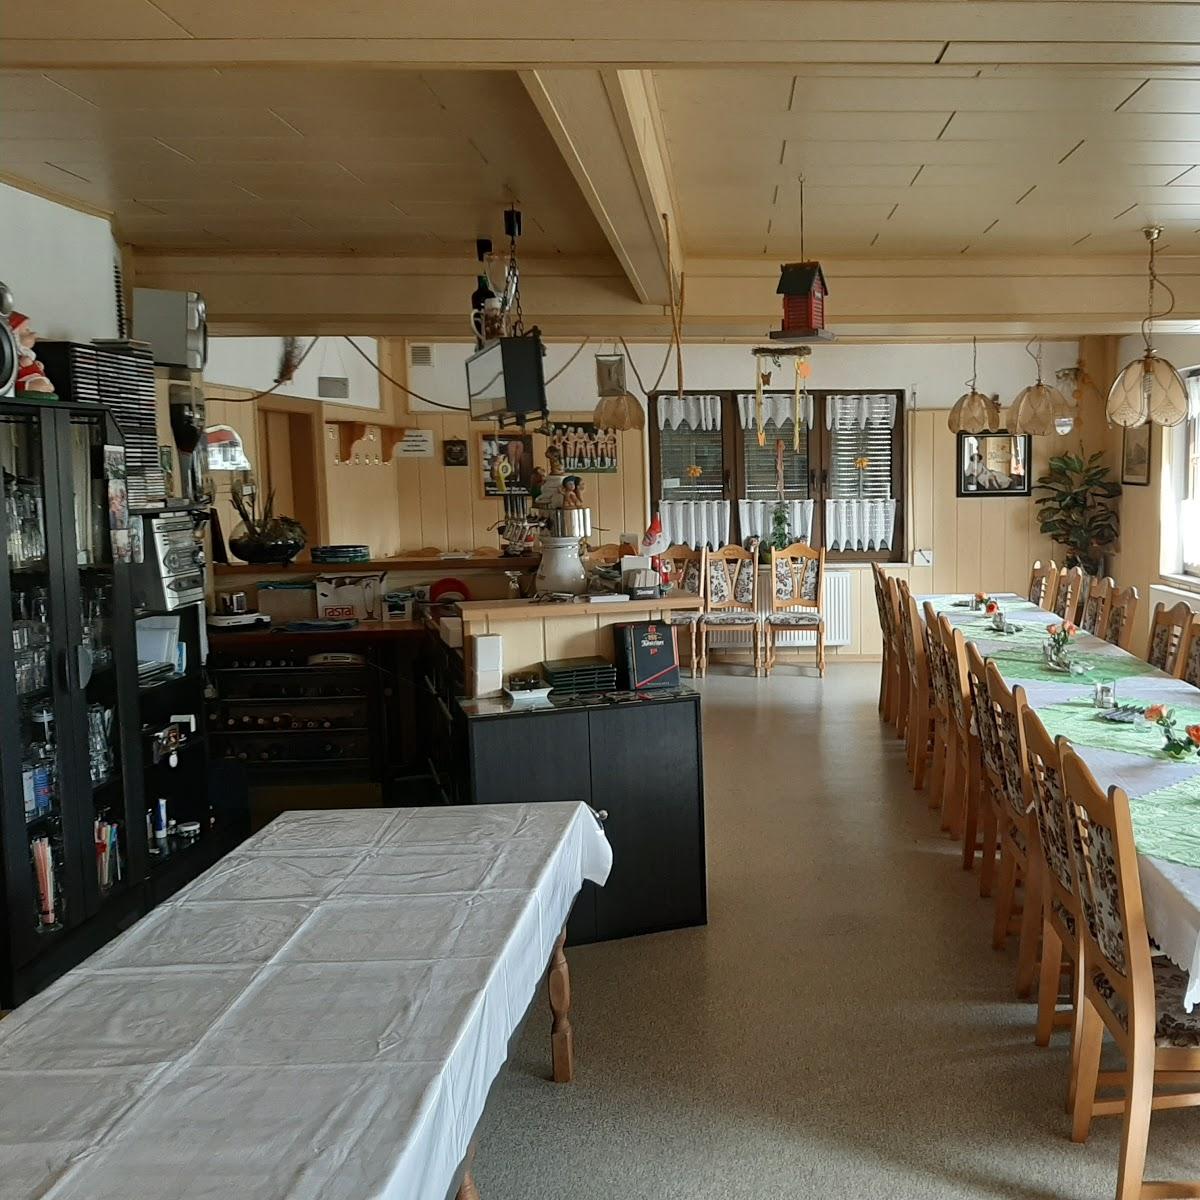 Restaurant "Gaststätte Zum goldenen Adler" in Ronneburg